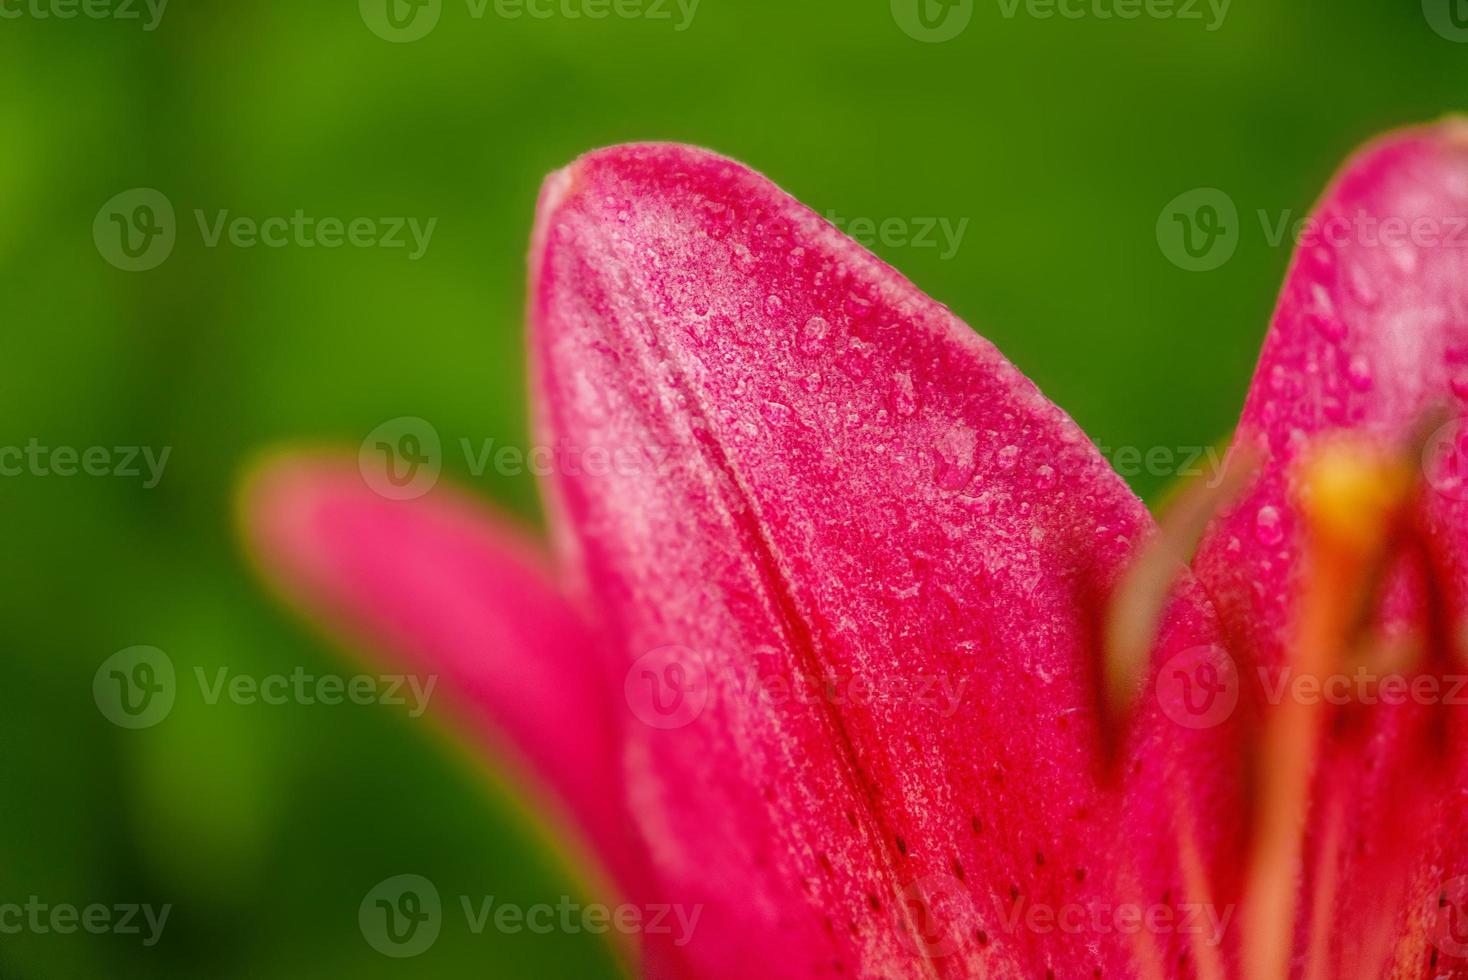 mooie heldere bloem. rode lelie macro foto close-up.